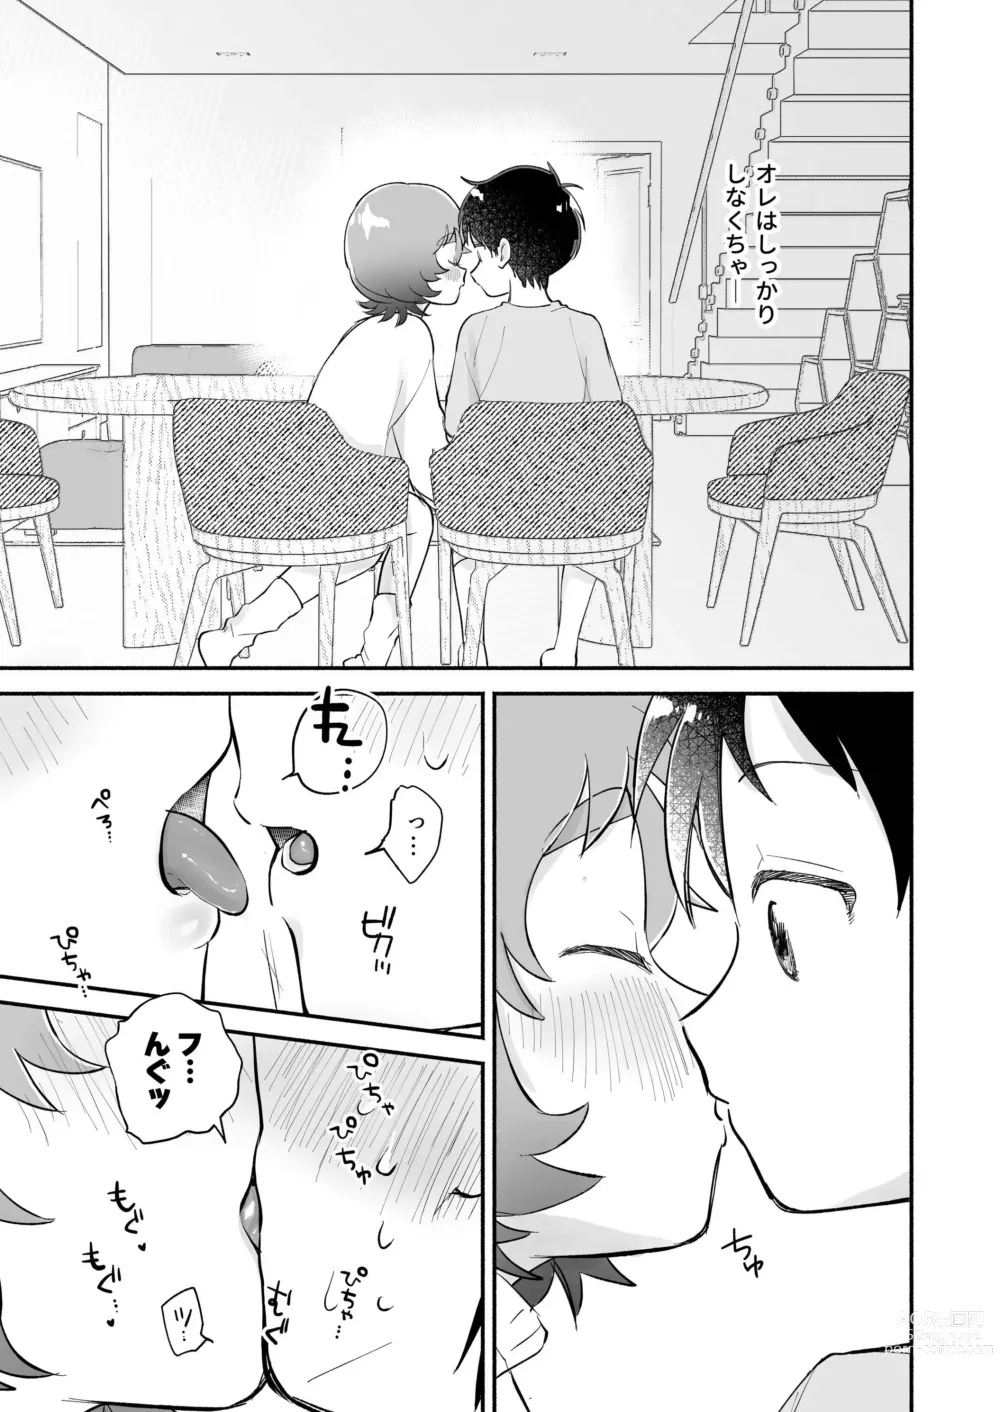 Page 7 of doujinshi Riku to Fuu Akachan Dekireba Kazoku ni Nareru no ka na